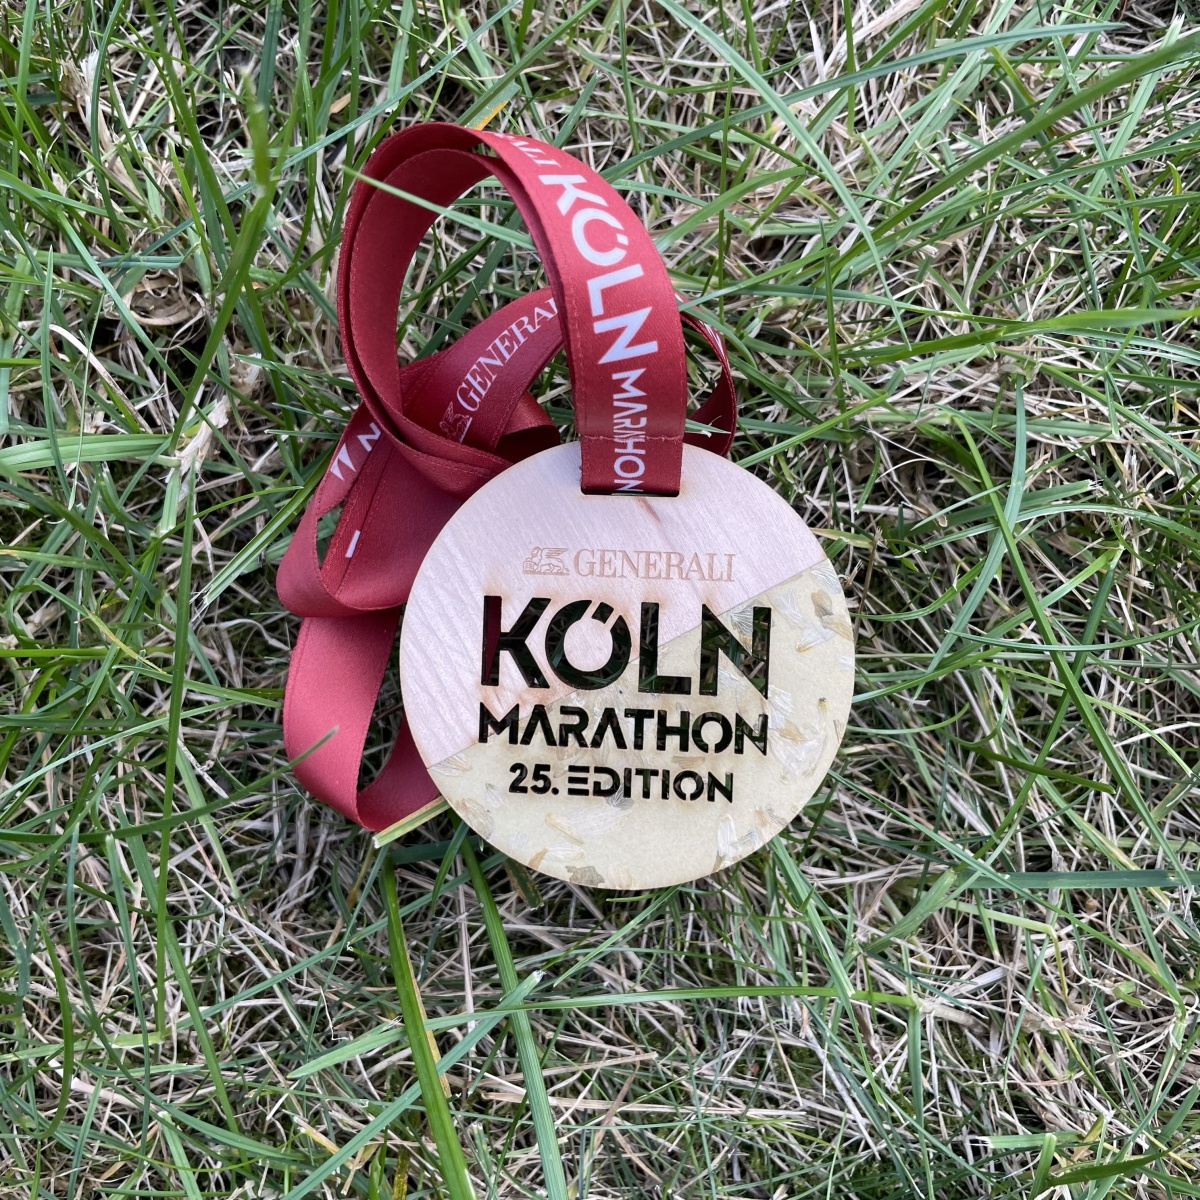 Travel & Run #46 – Le marathon de Cologne